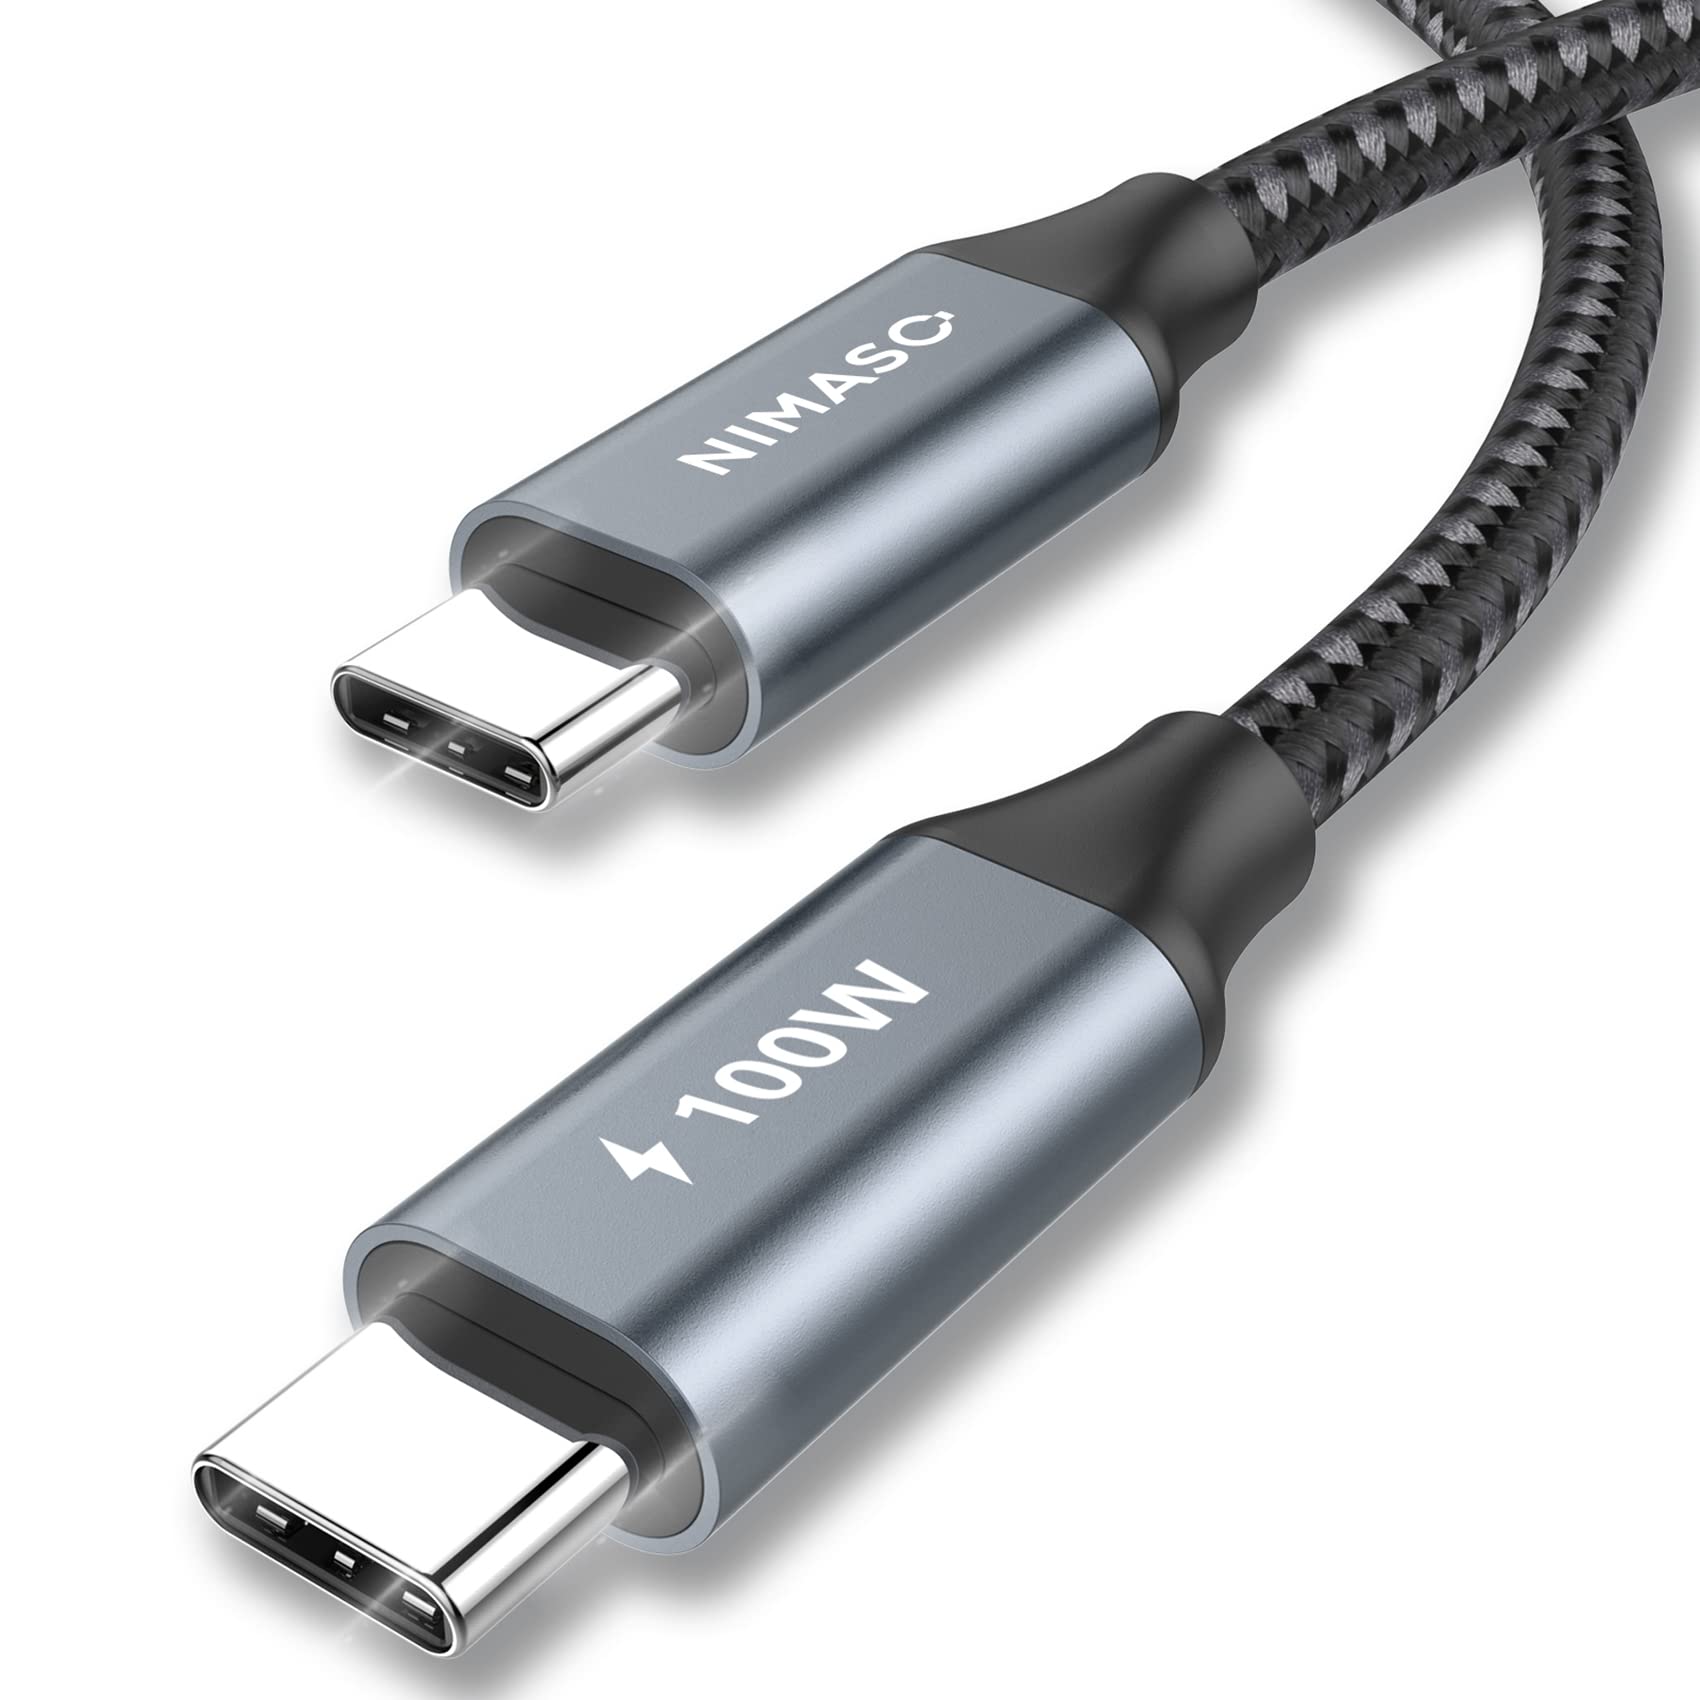 Nimaso USB C Type C ケーブル PD対応 100W/5A 急速充電 1mタイプc ケーブル MacBook、iPad Pro (2018,2020)、Galaxy等type c機種対応(グレー)